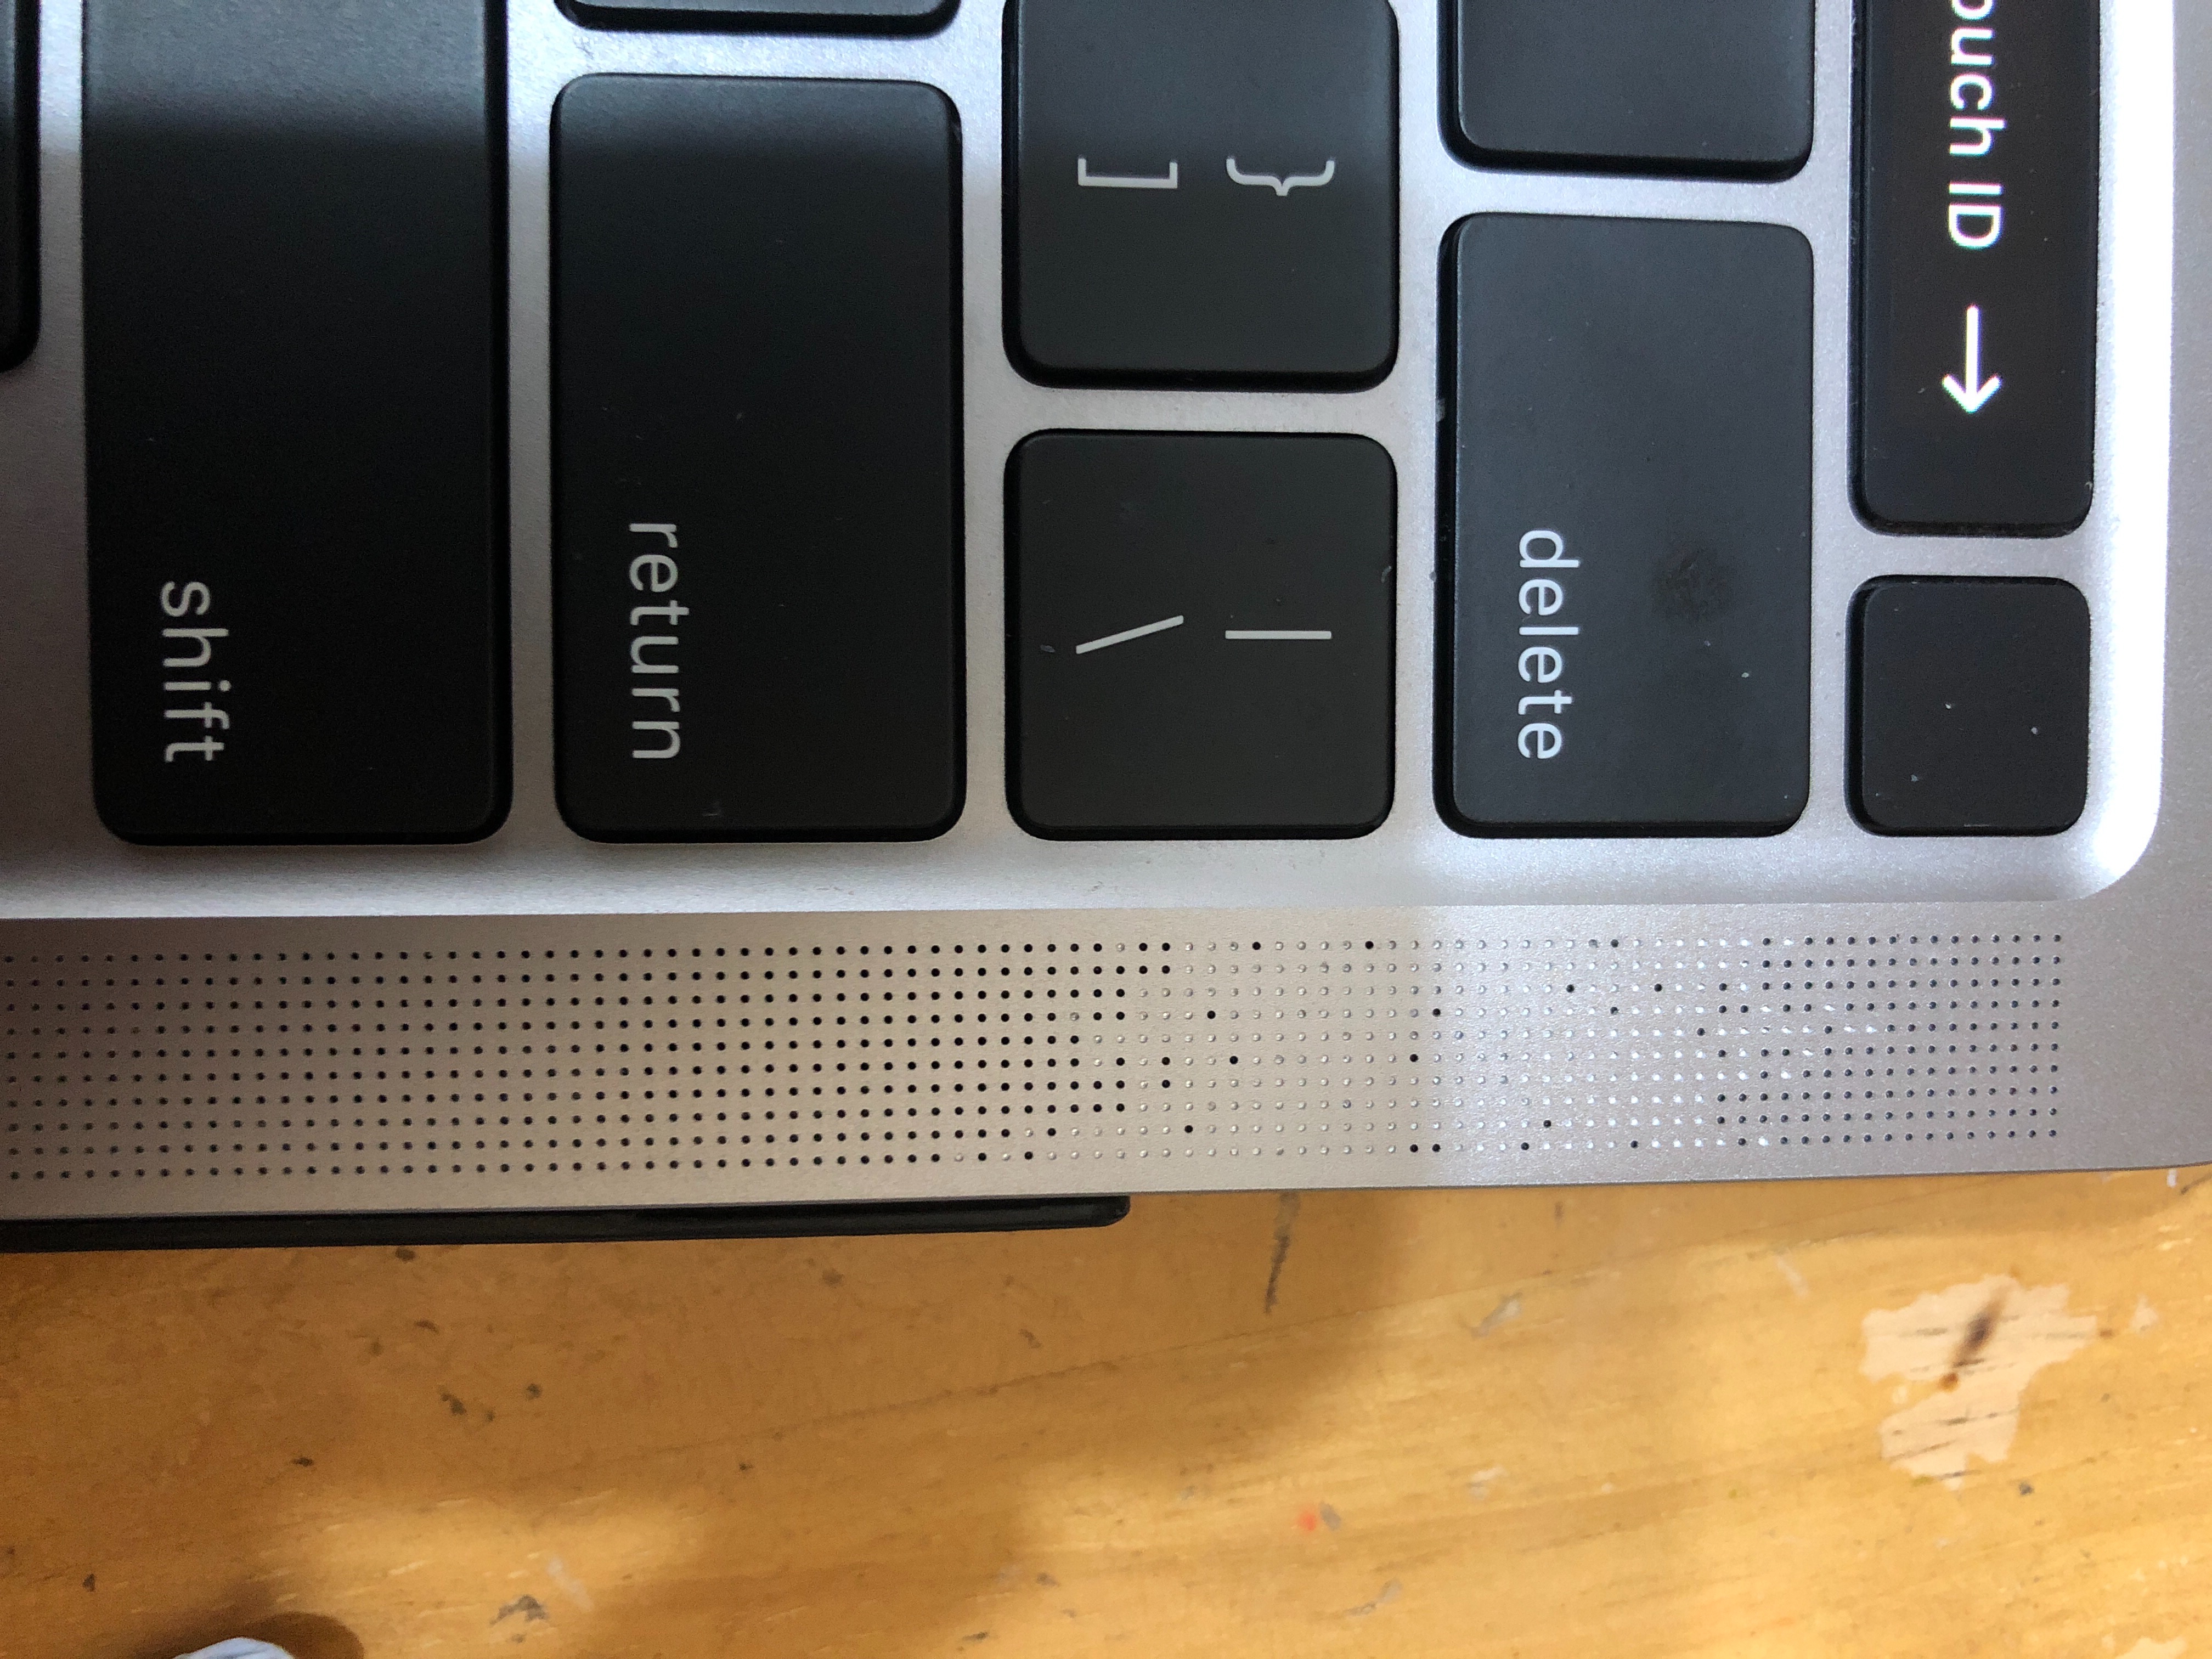 How to Clean Macbook Speakers?